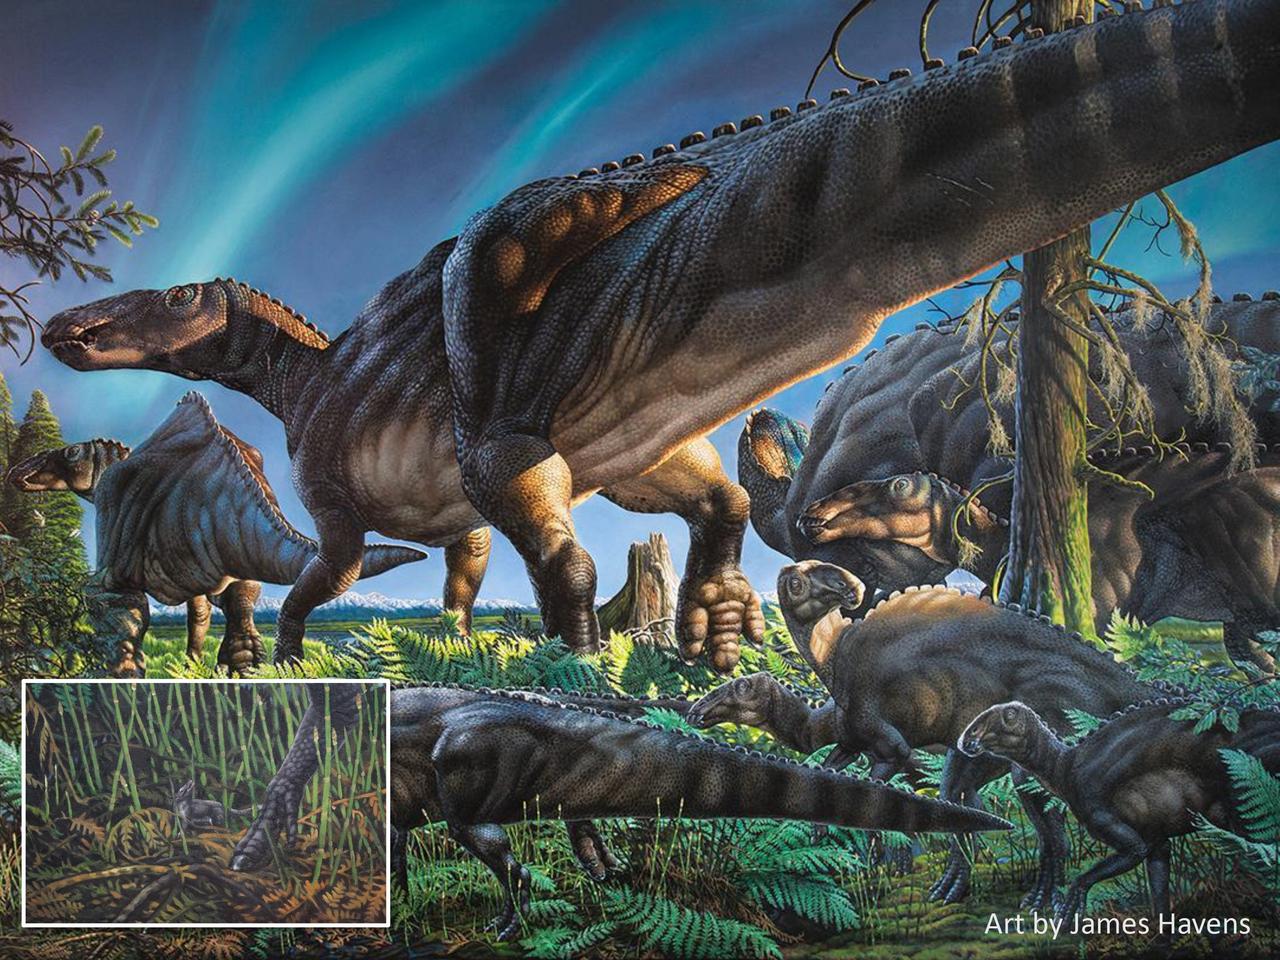 シクオミス・ミクロスが食べものを探すときには、自分よりもはるかに大きな恐竜をうまくかわさなければならなかっただろう。